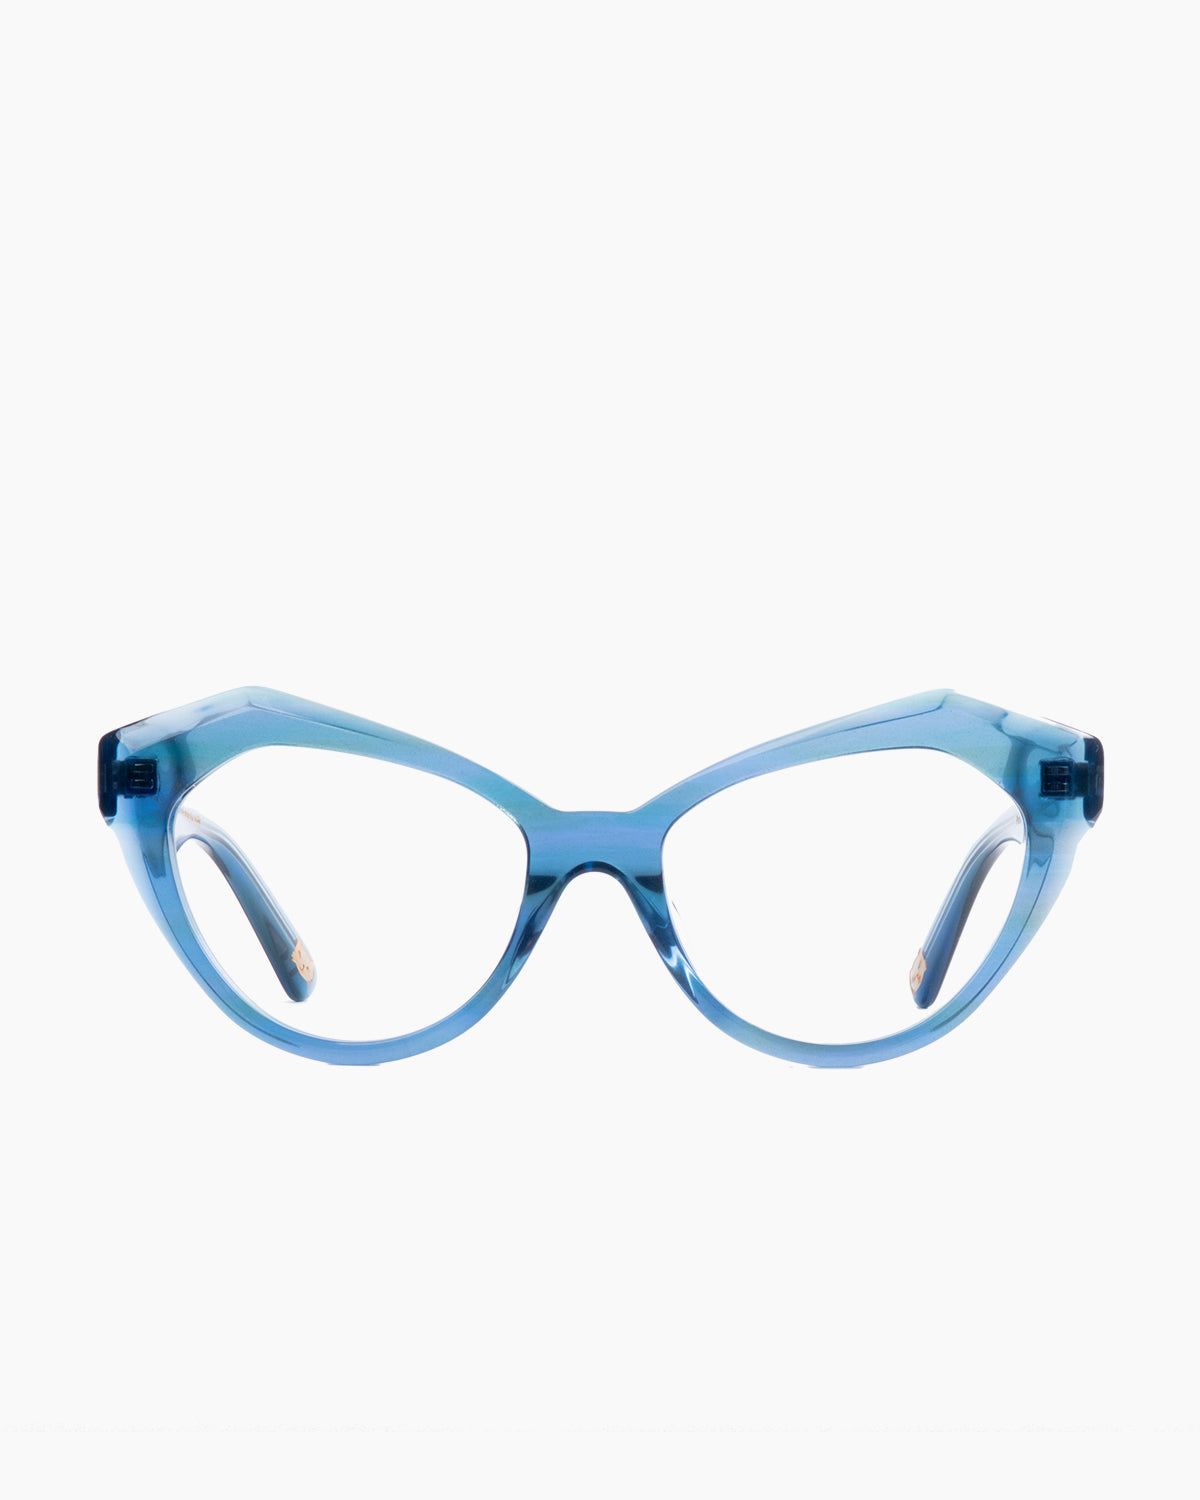 Spectacleeyeworks - Ayalah - c456 | glasses bar